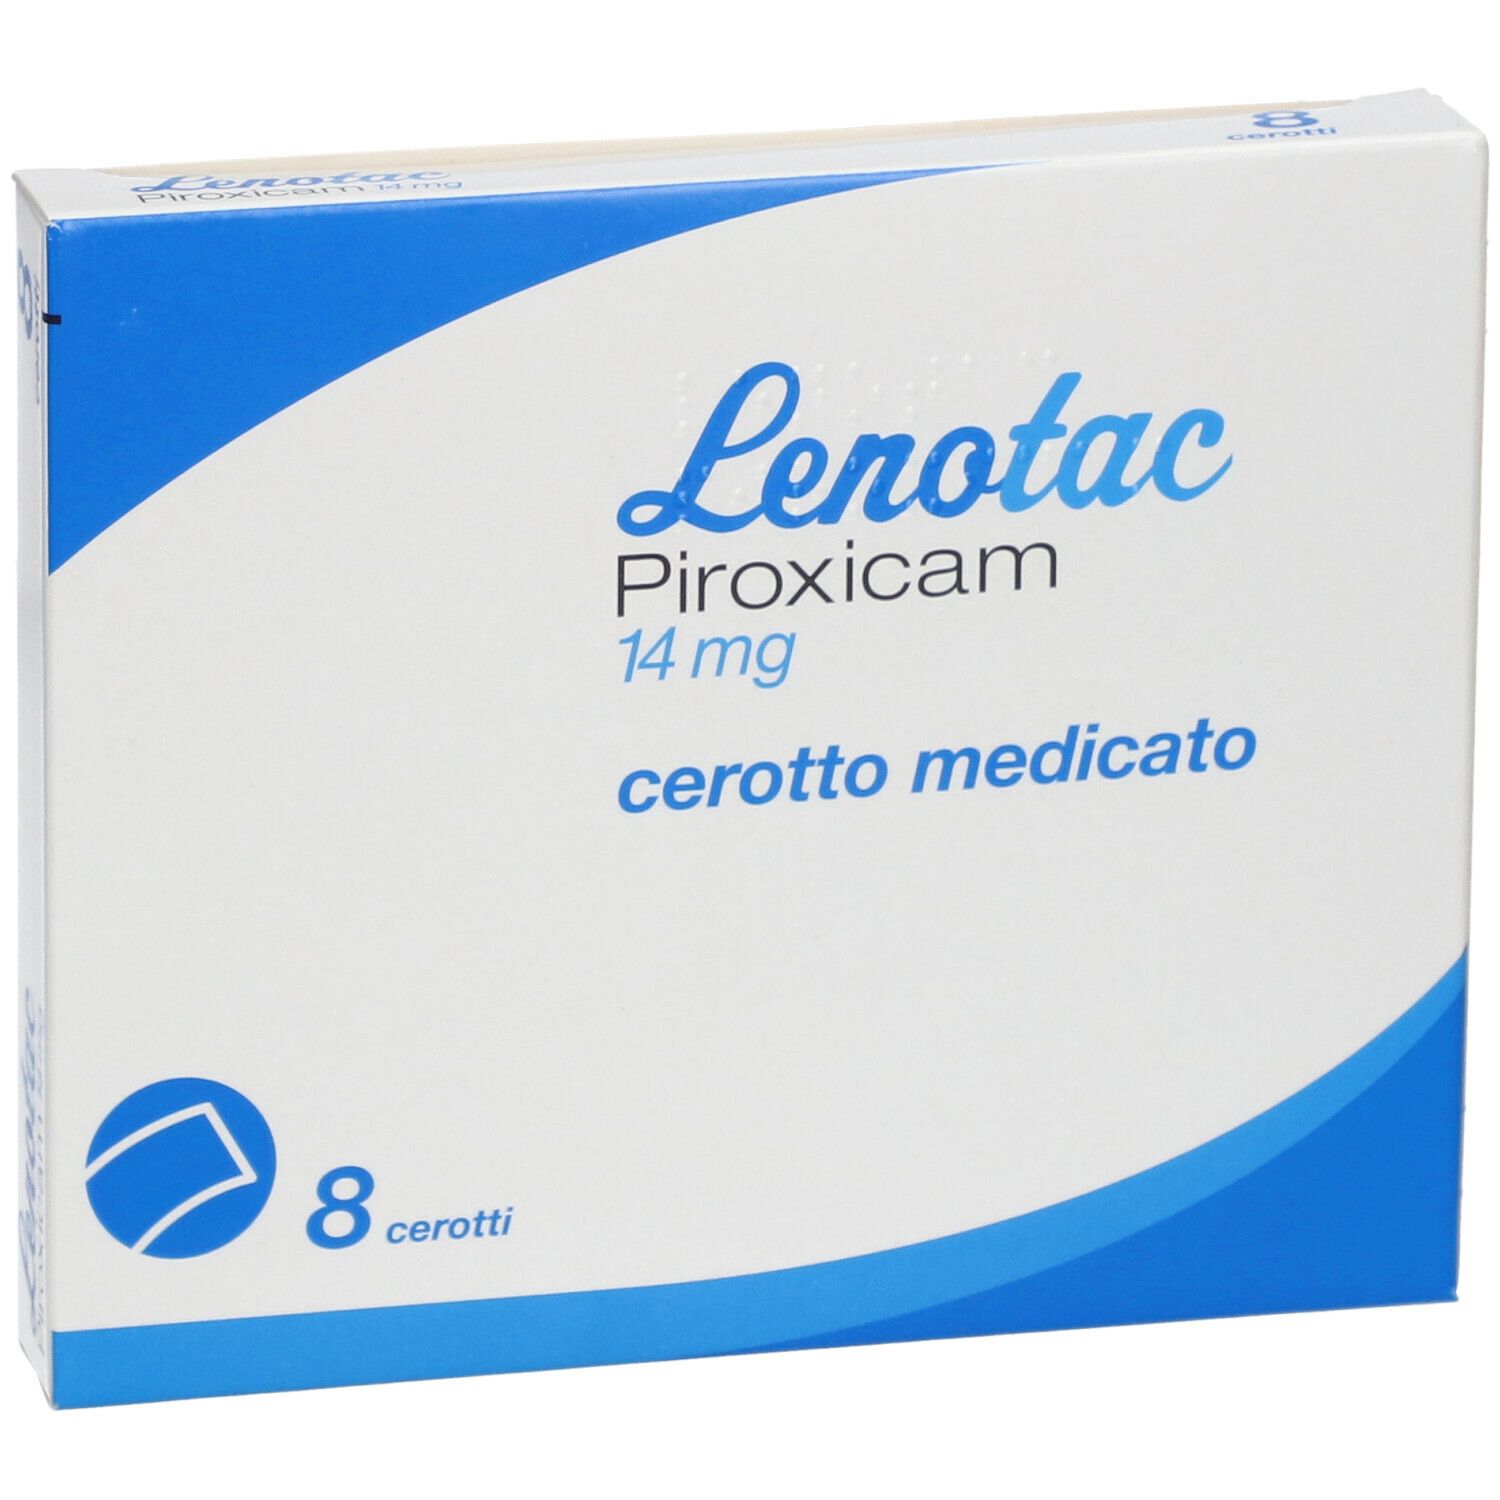 Lenotac Piroxicam 14 mg